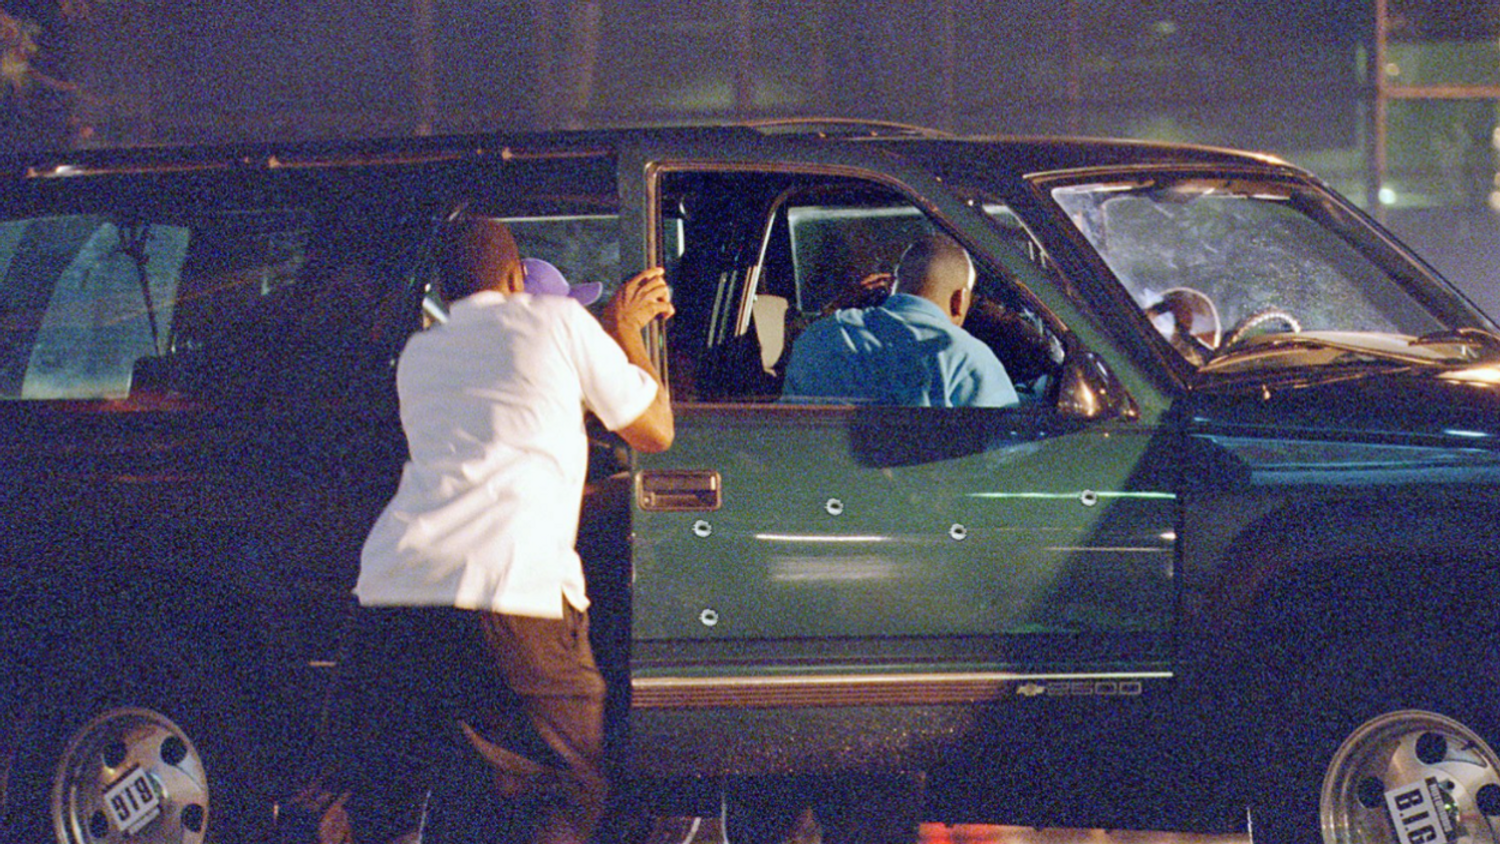 Le SUV de biggie lors de son assassinat à LA 